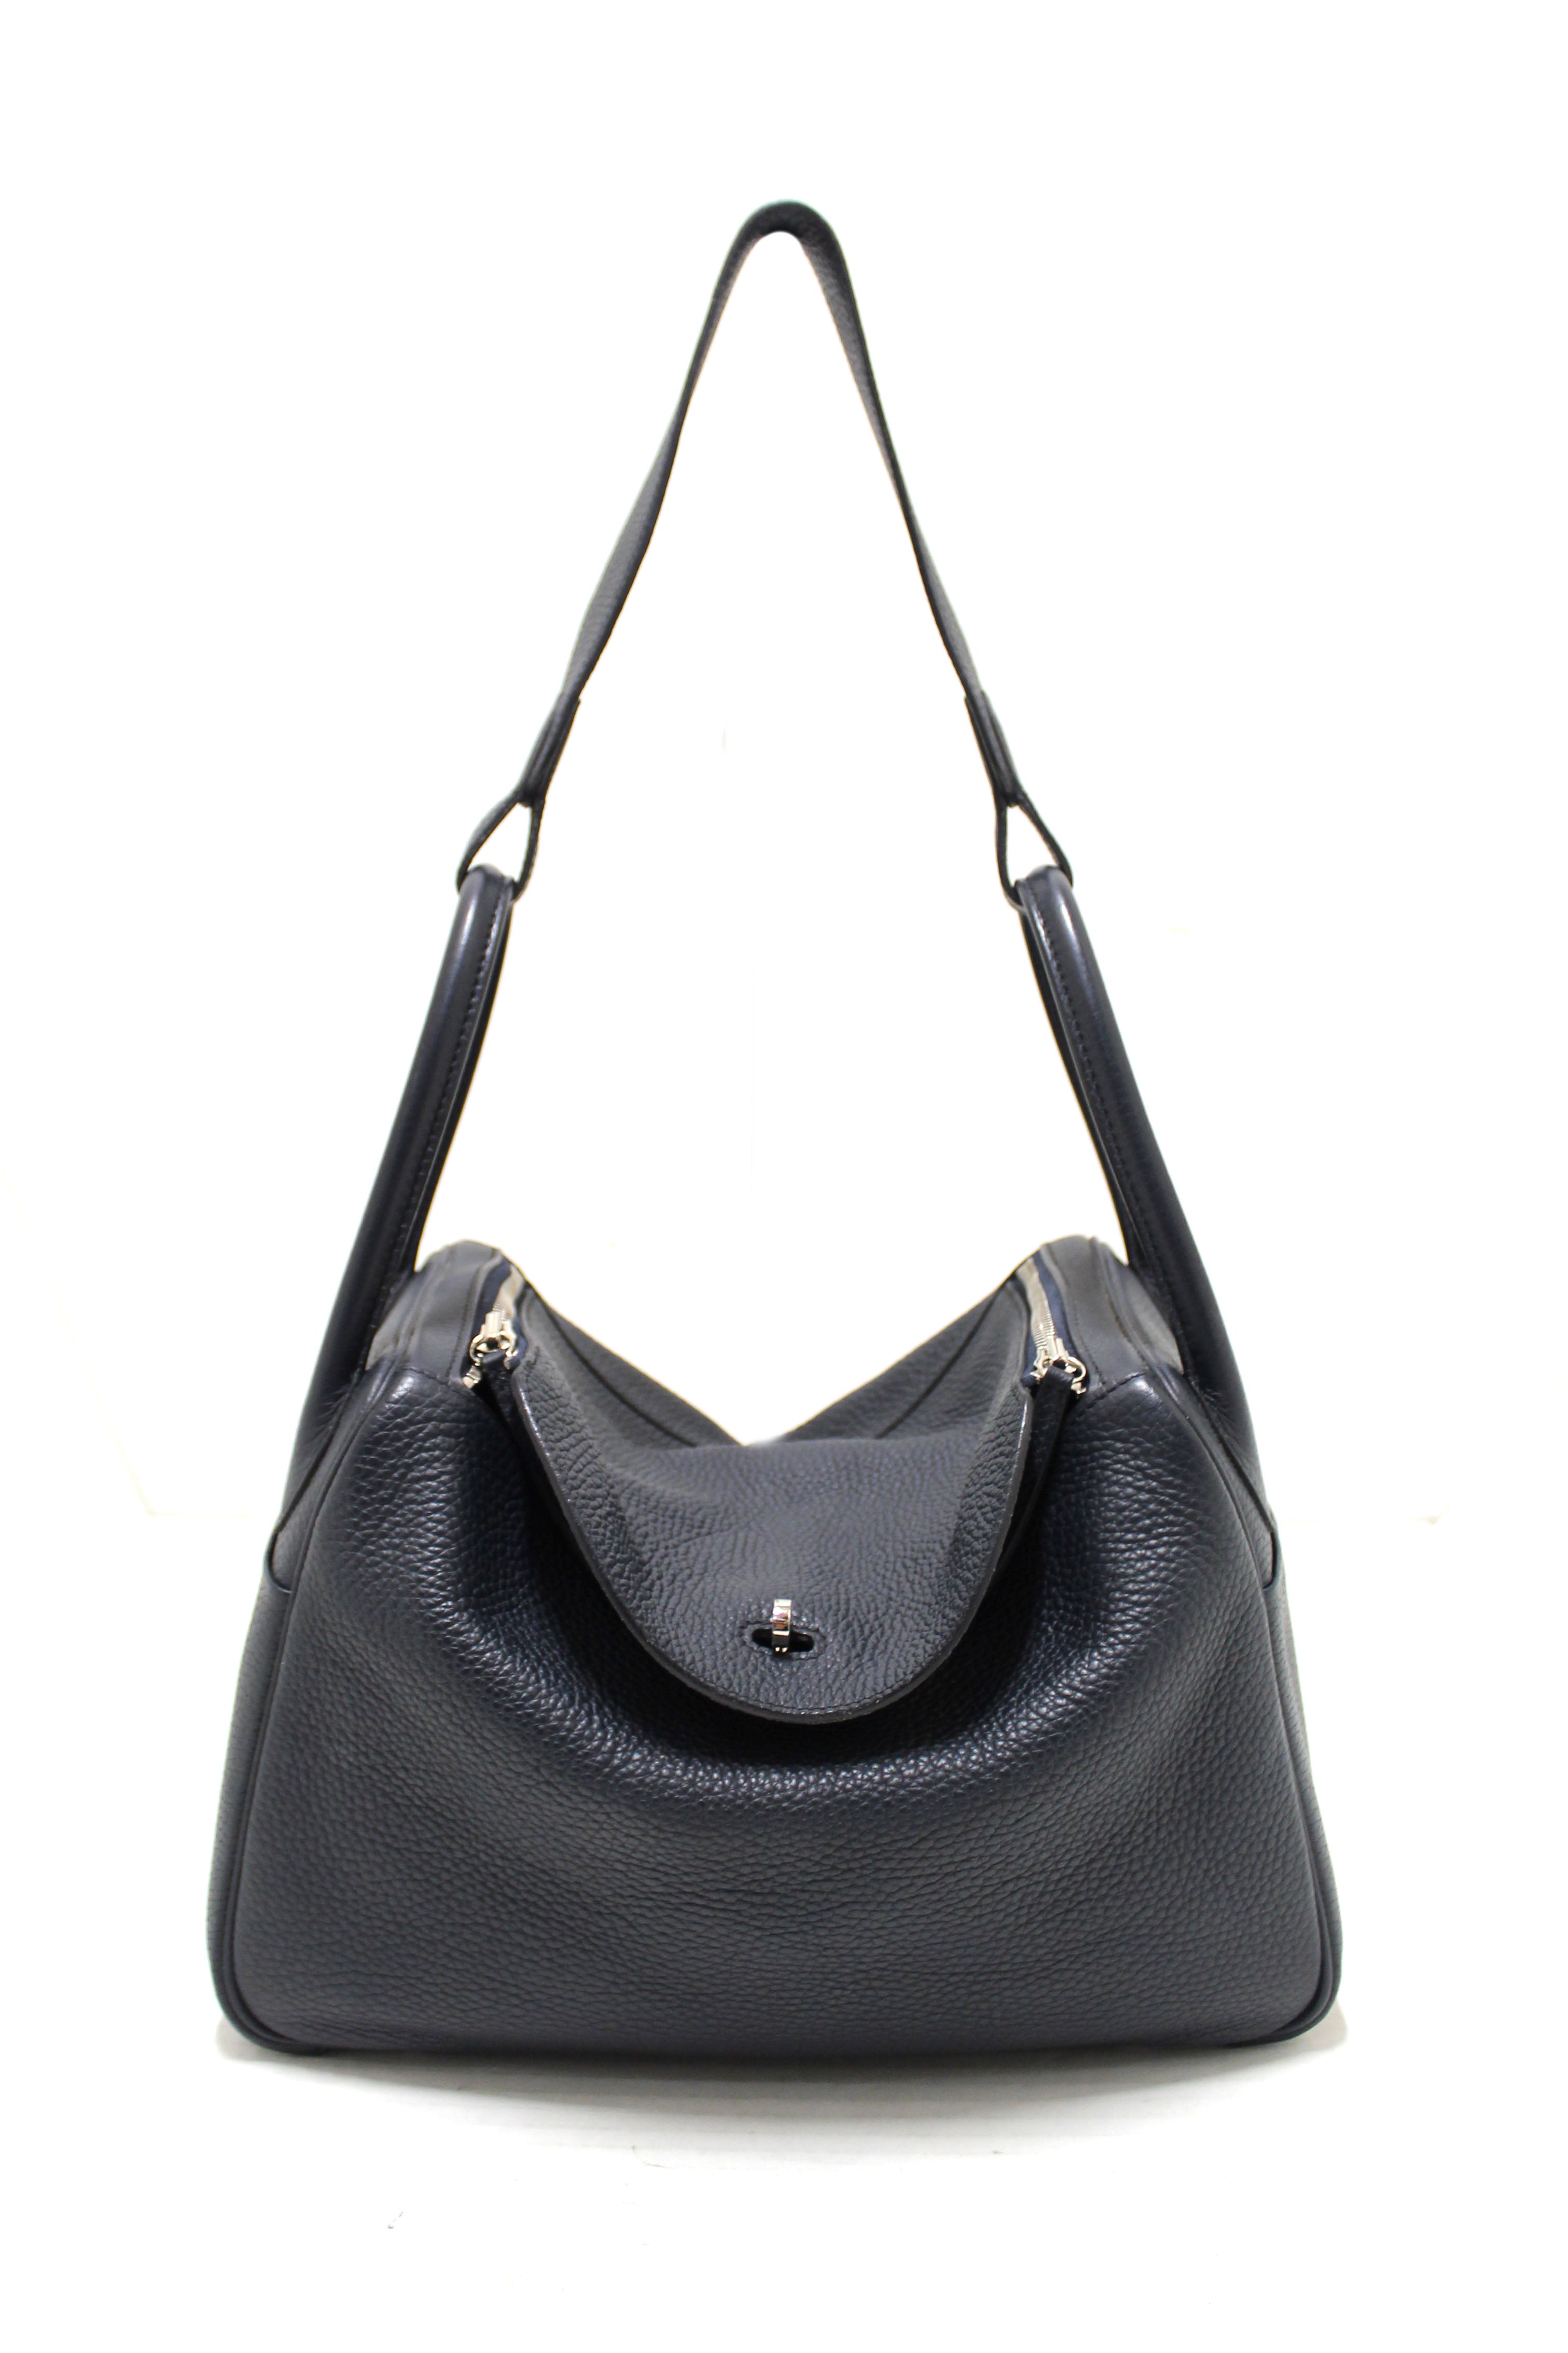 Authentic Hermes Bleu Indigo Togo Leather Lindy 30 Handbag/Shoulder Bag